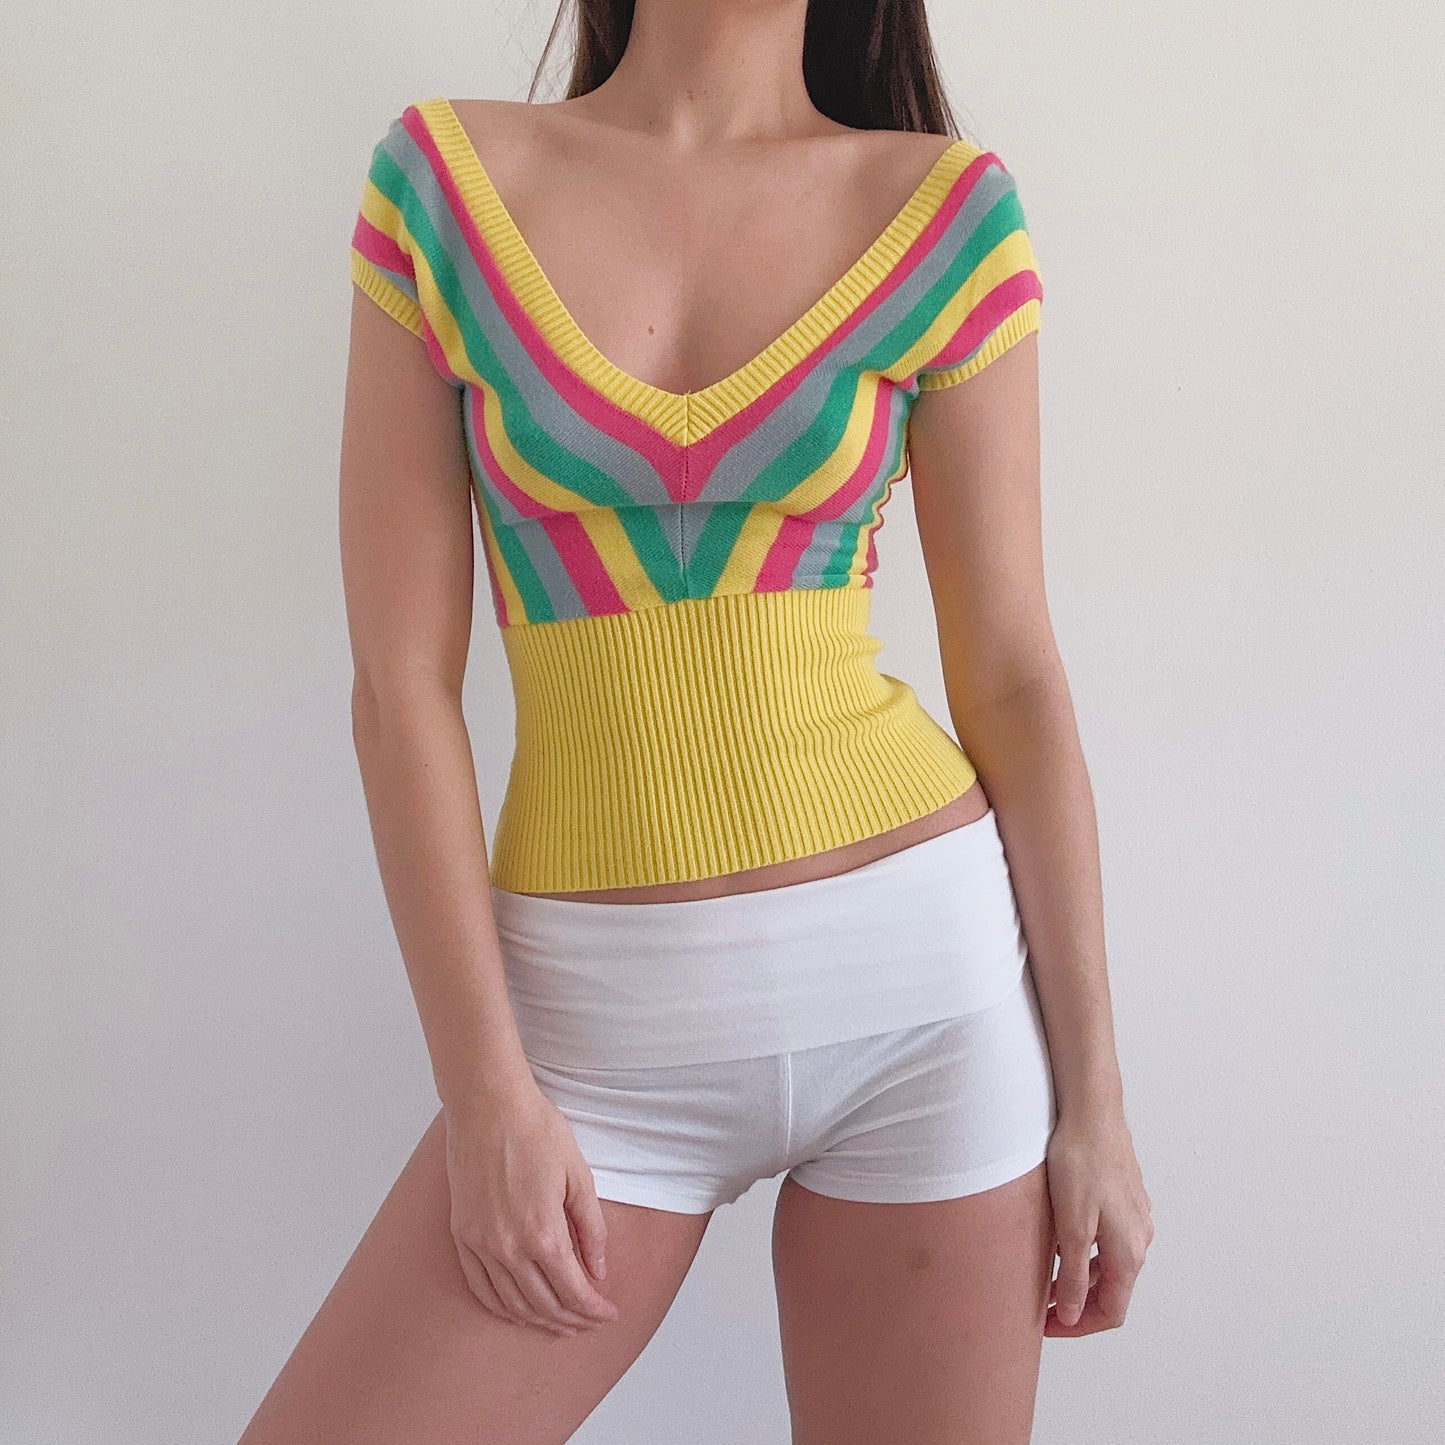 Y2K Yellow Multicolor Striped Knit Top / SZ S